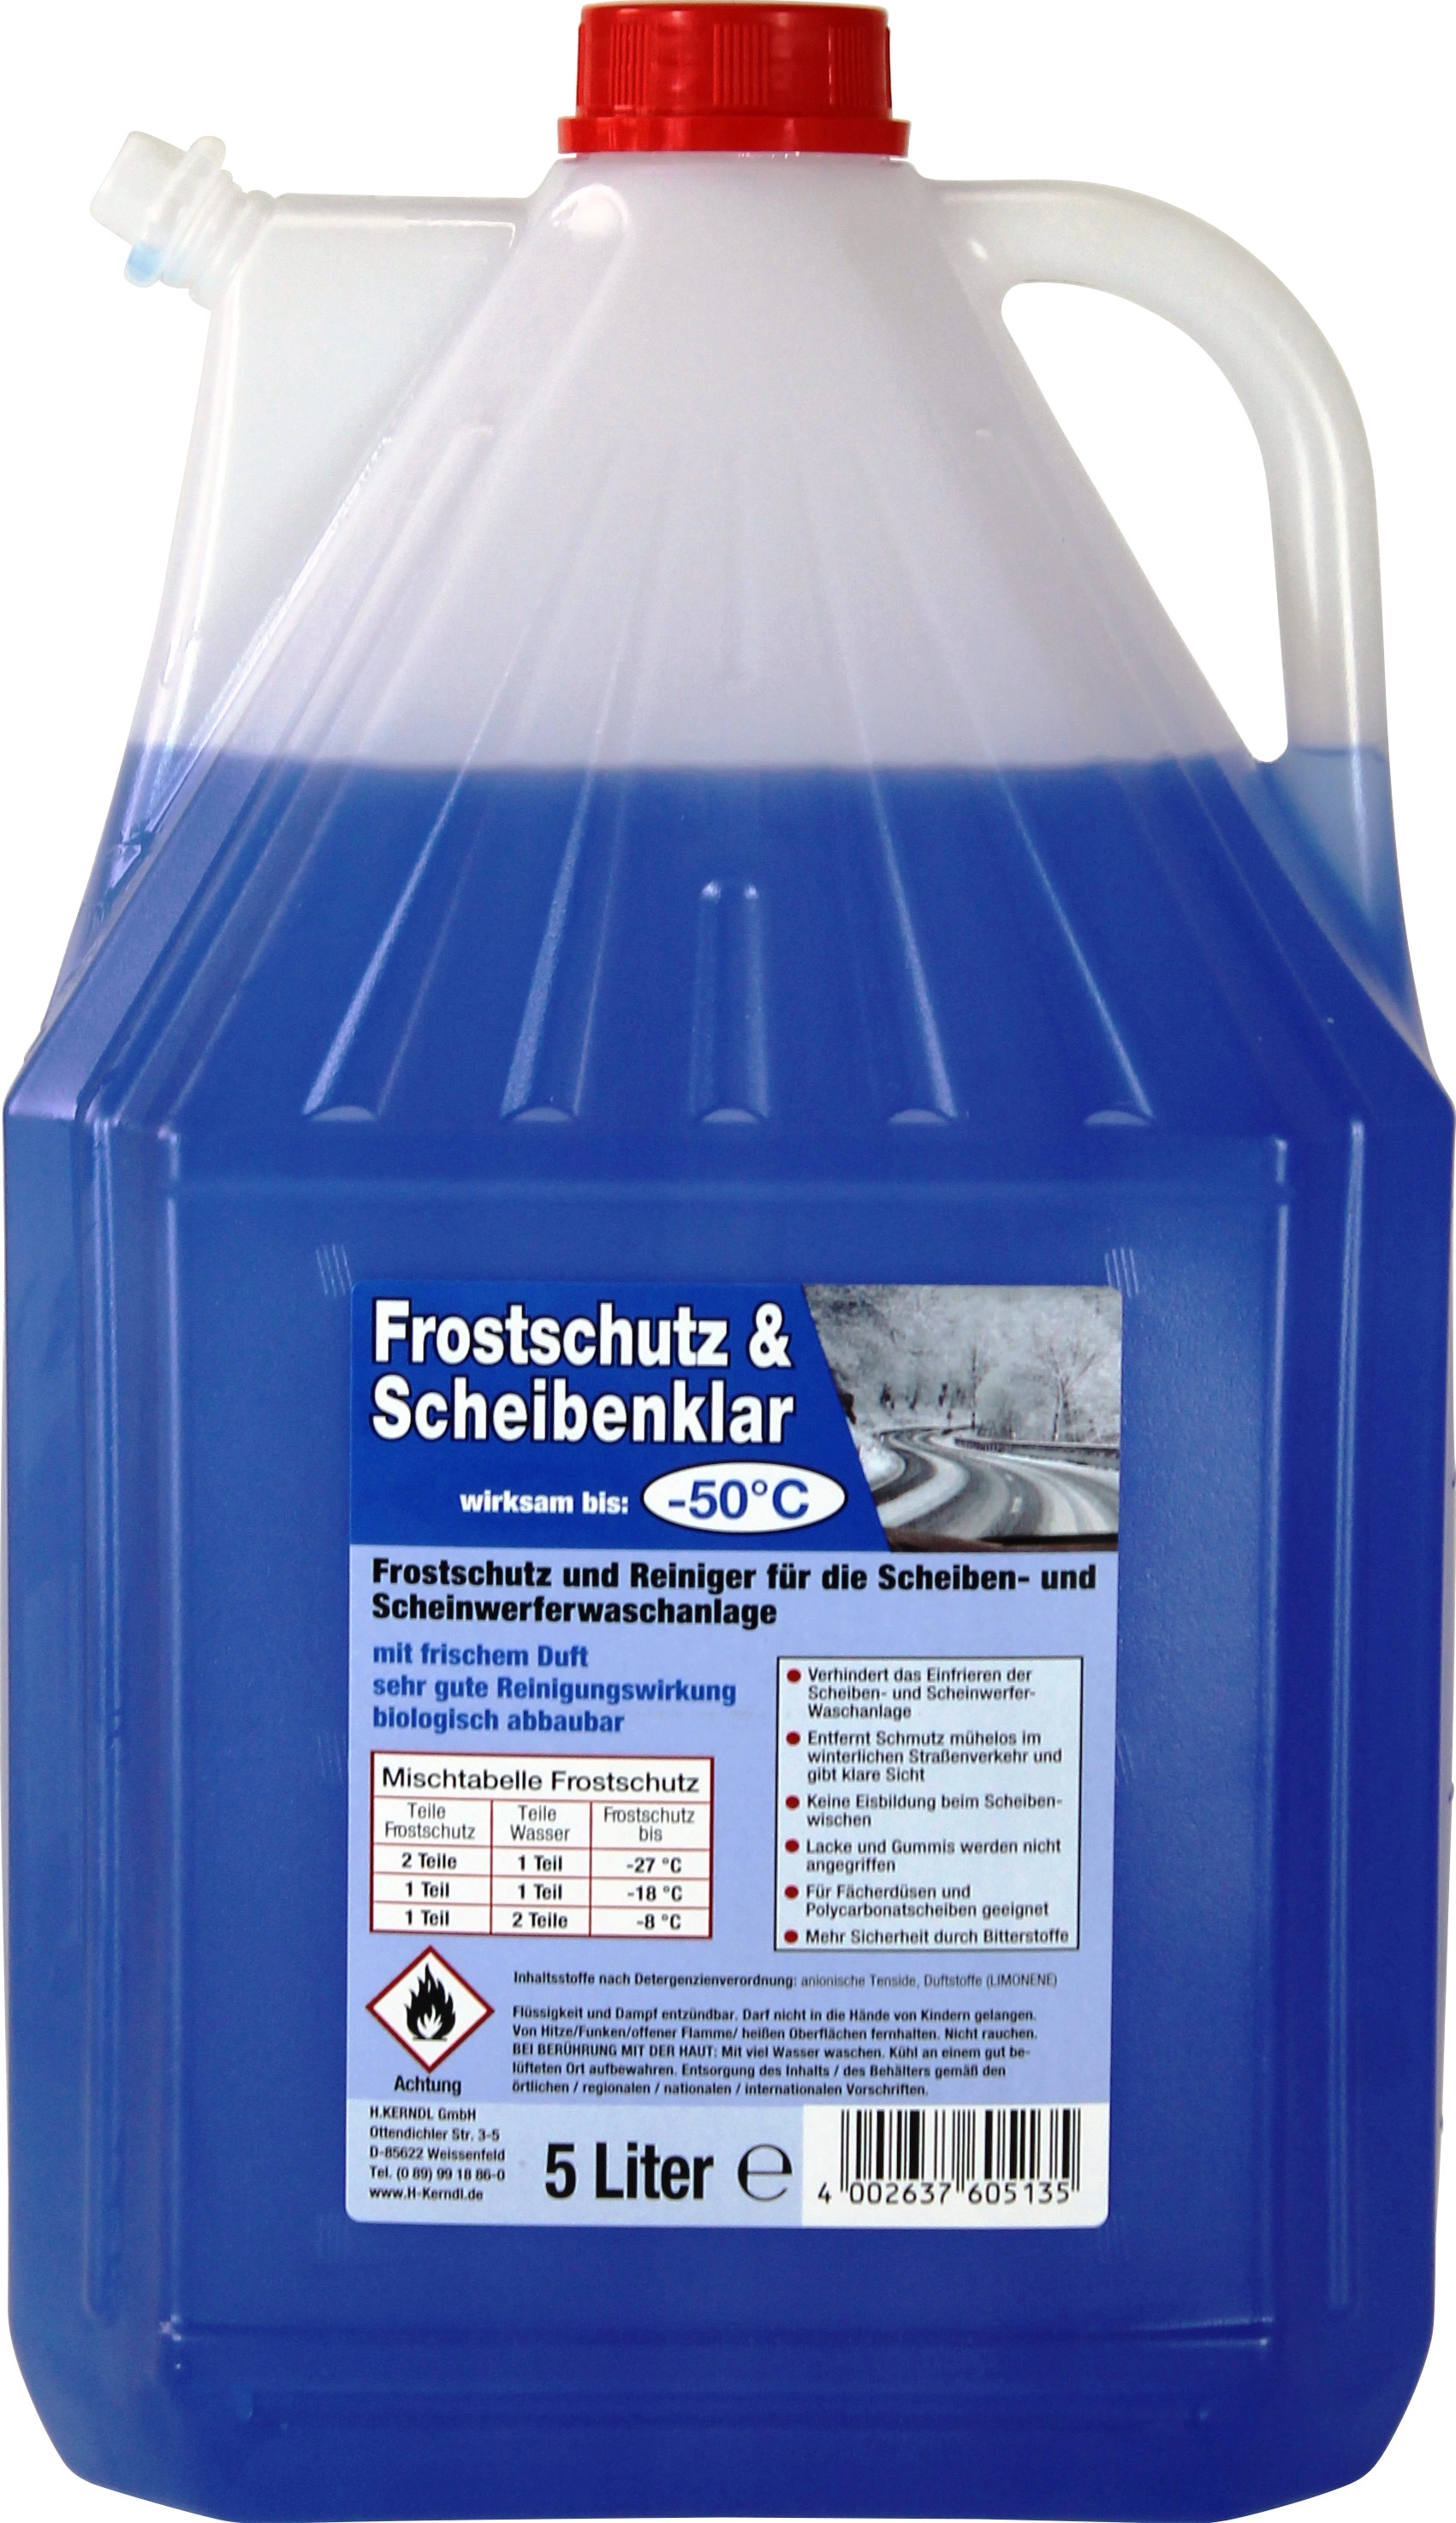 Karipol - Scheibenfrostschutz - 1000 ml, Konzentrat, Zitrusduft, 5,25 €